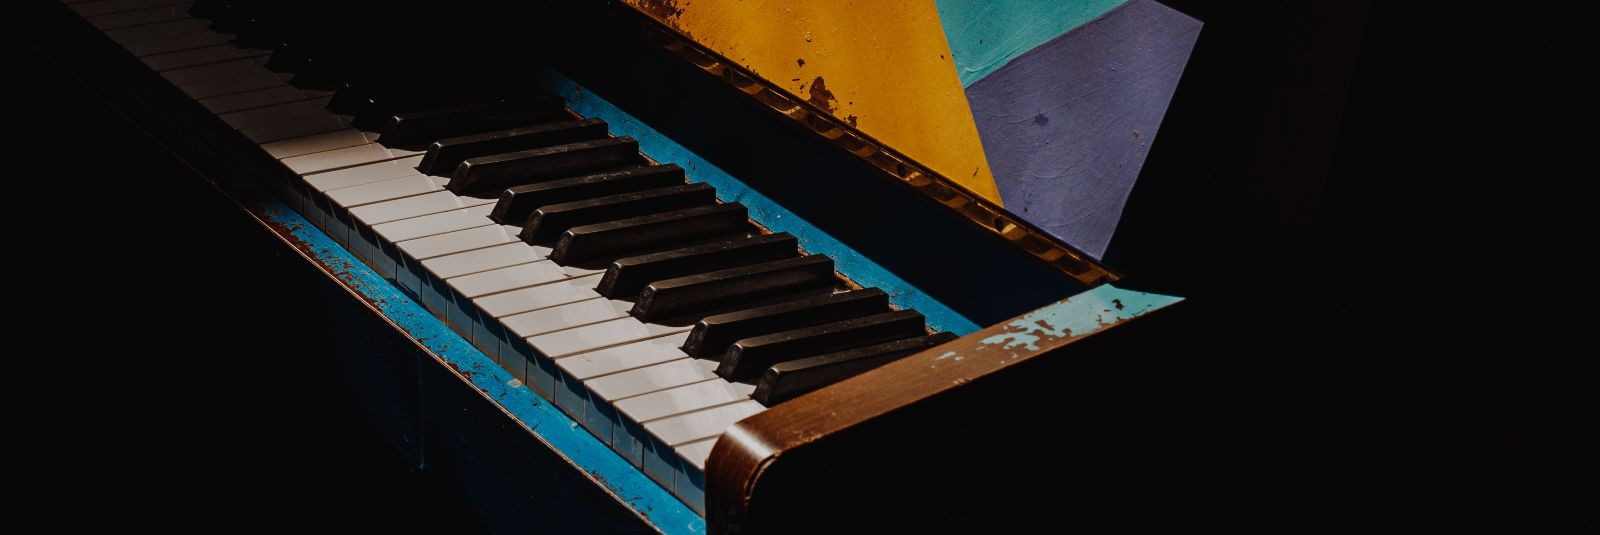 Klaverid on erakordsed instrumendid, mis võivad pakkuda helilist ...